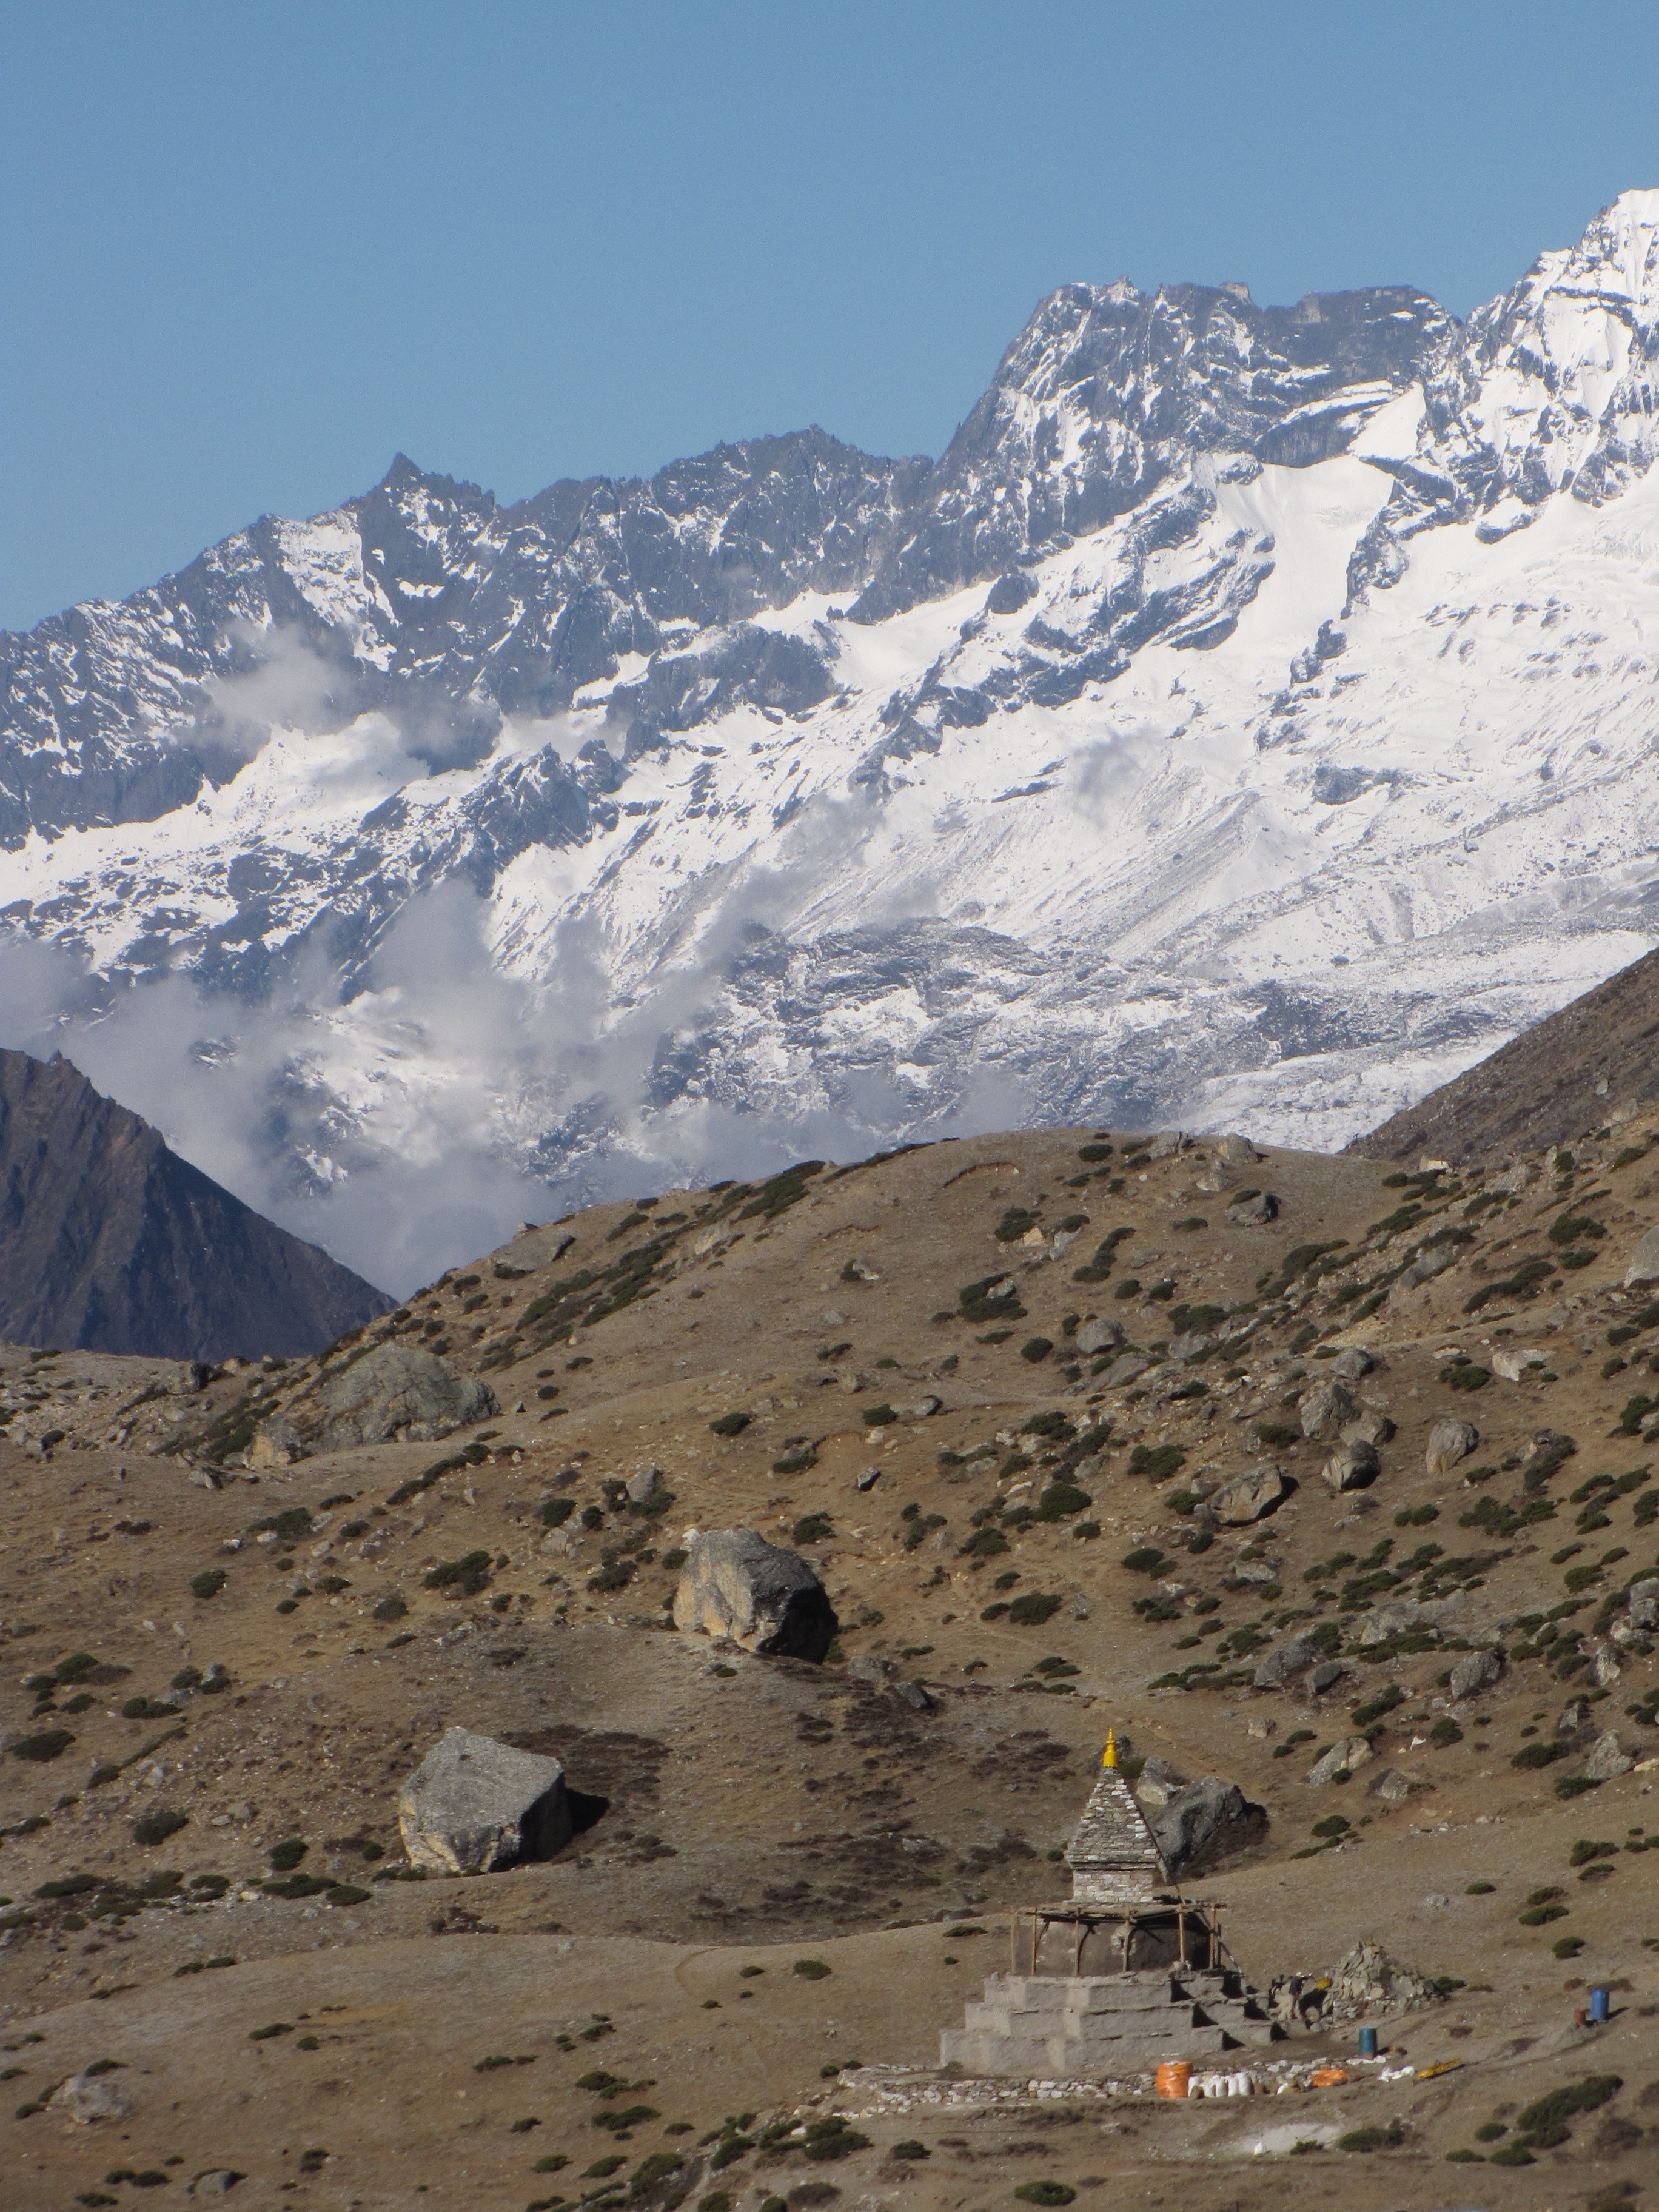 Typical High Altitude Himalayan Vista